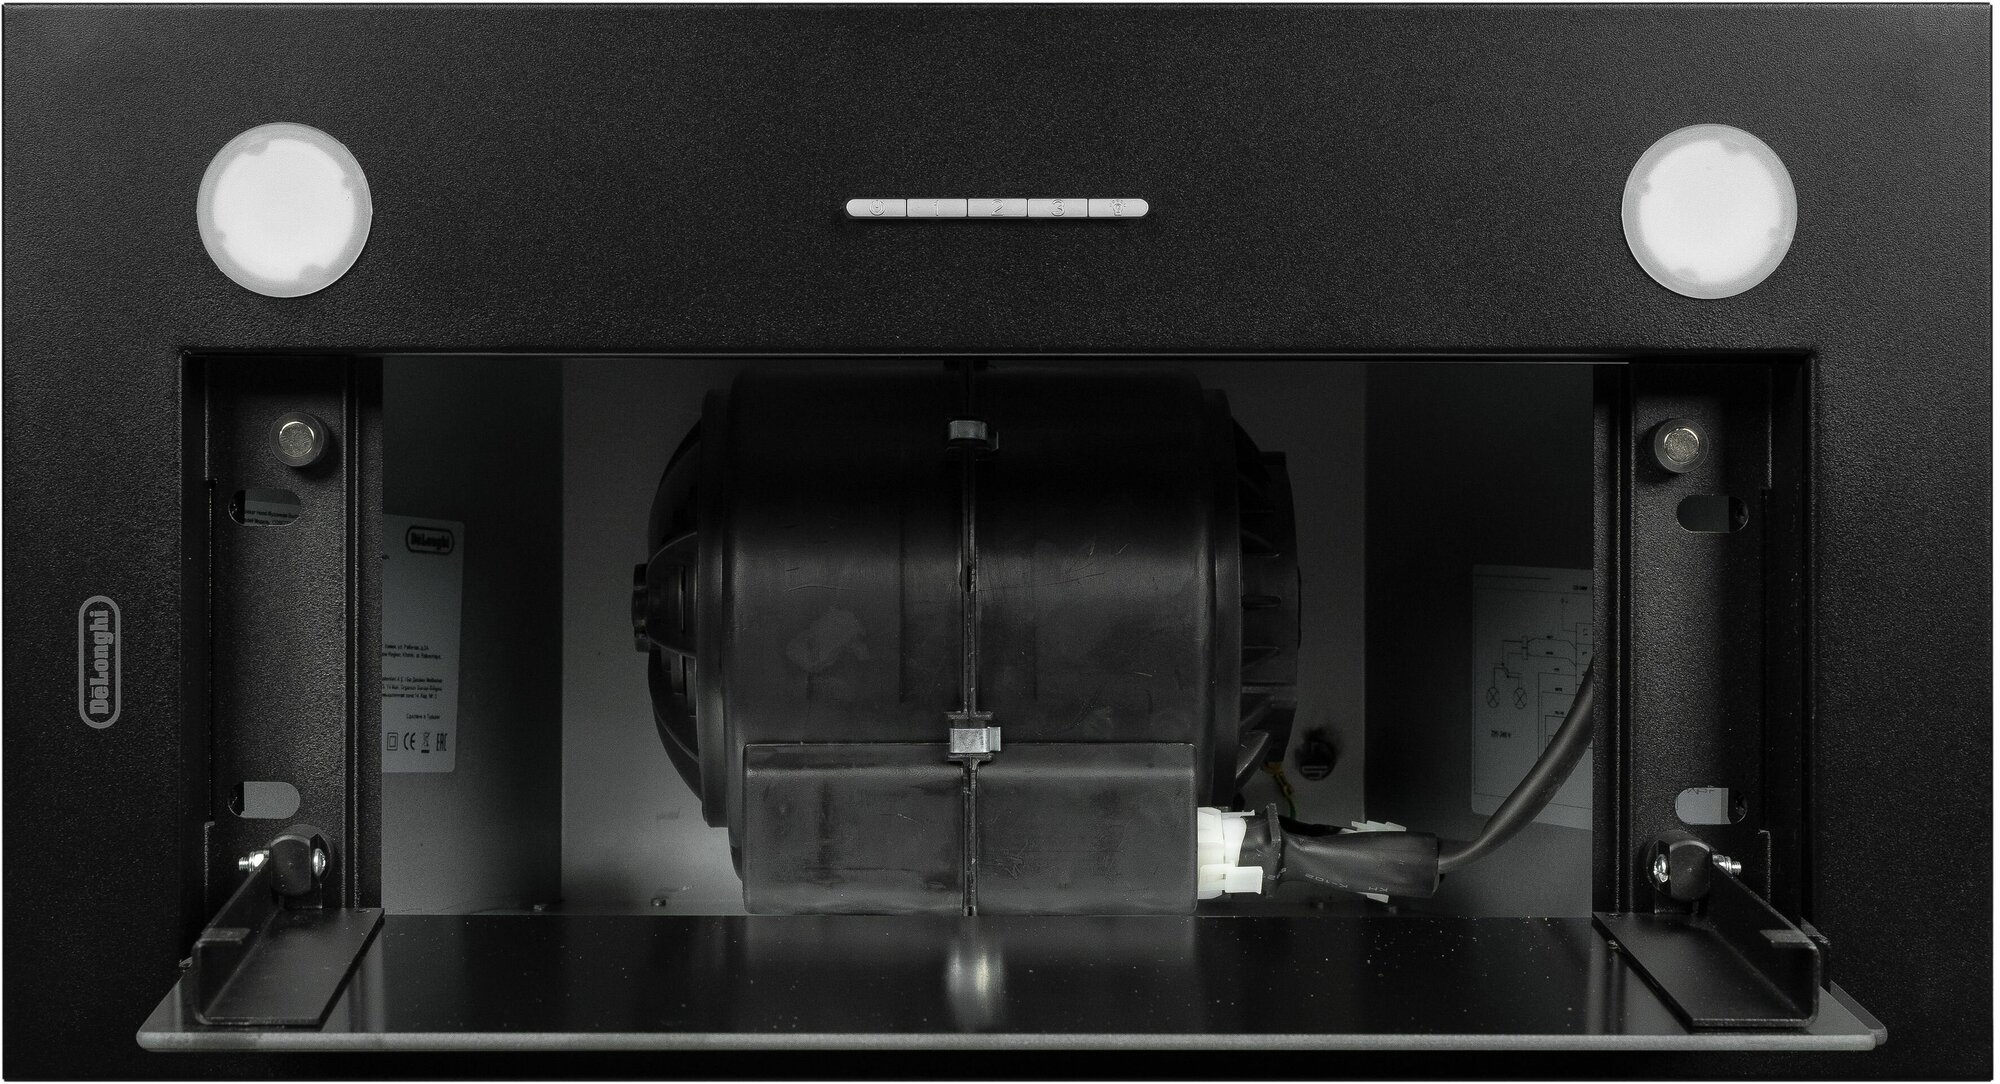 Кухонная вытяжка DeLonghi COSETTA 508 NB, полностью встраиваемая, 52 см, черная, 3 скорости, 850 м3/ч - фотография № 12